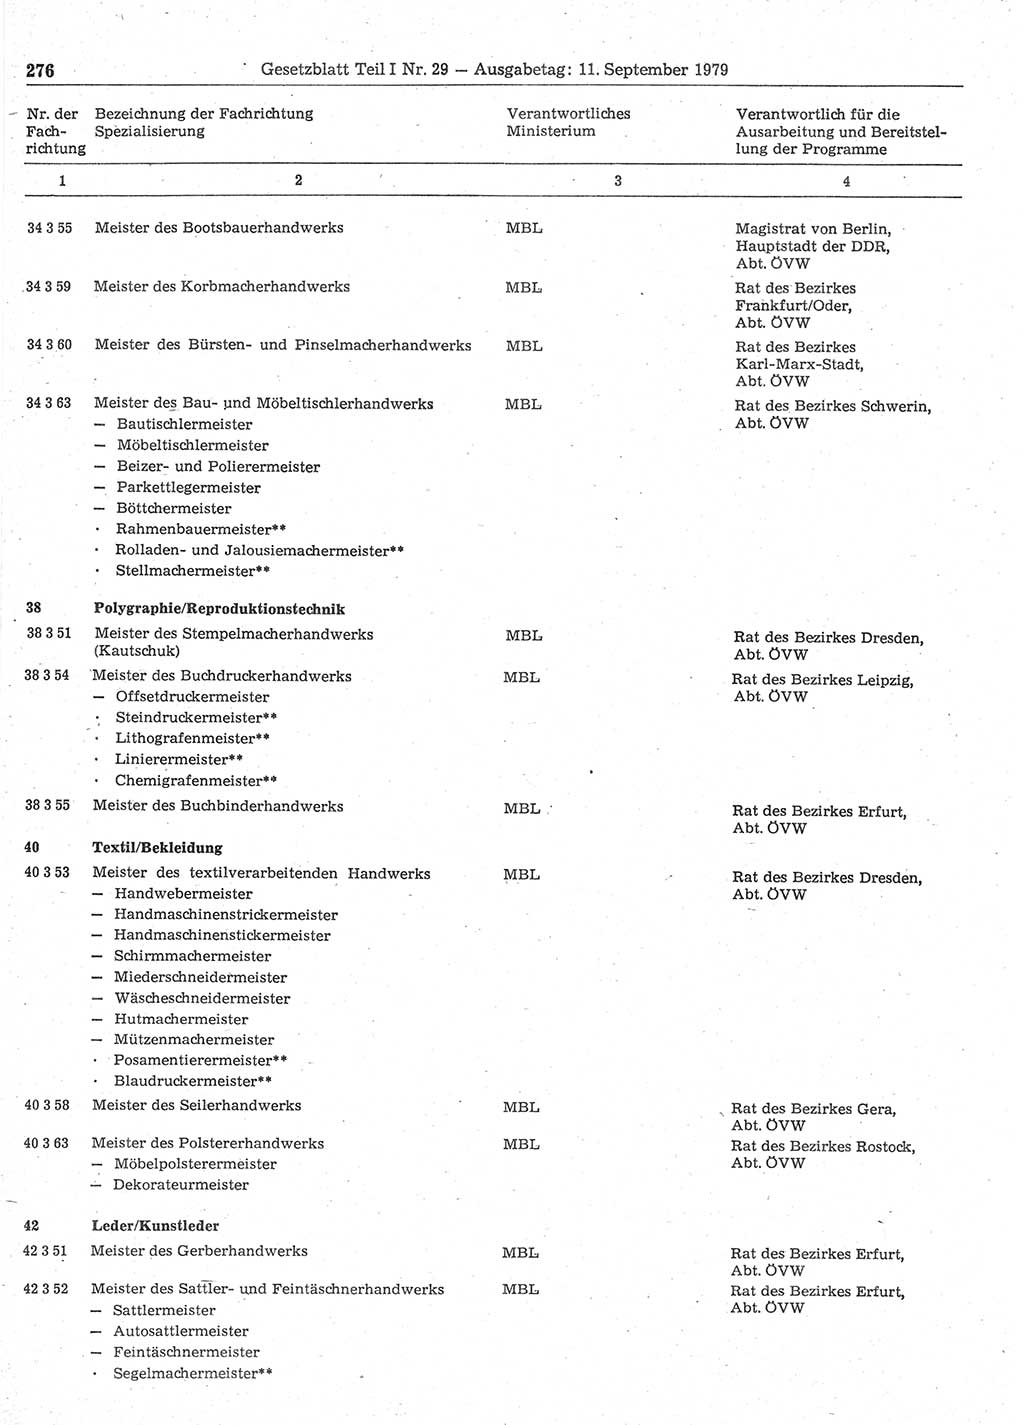 Gesetzblatt (GBl.) der Deutschen Demokratischen Republik (DDR) Teil Ⅰ 1979, Seite 276 (GBl. DDR Ⅰ 1979, S. 276)